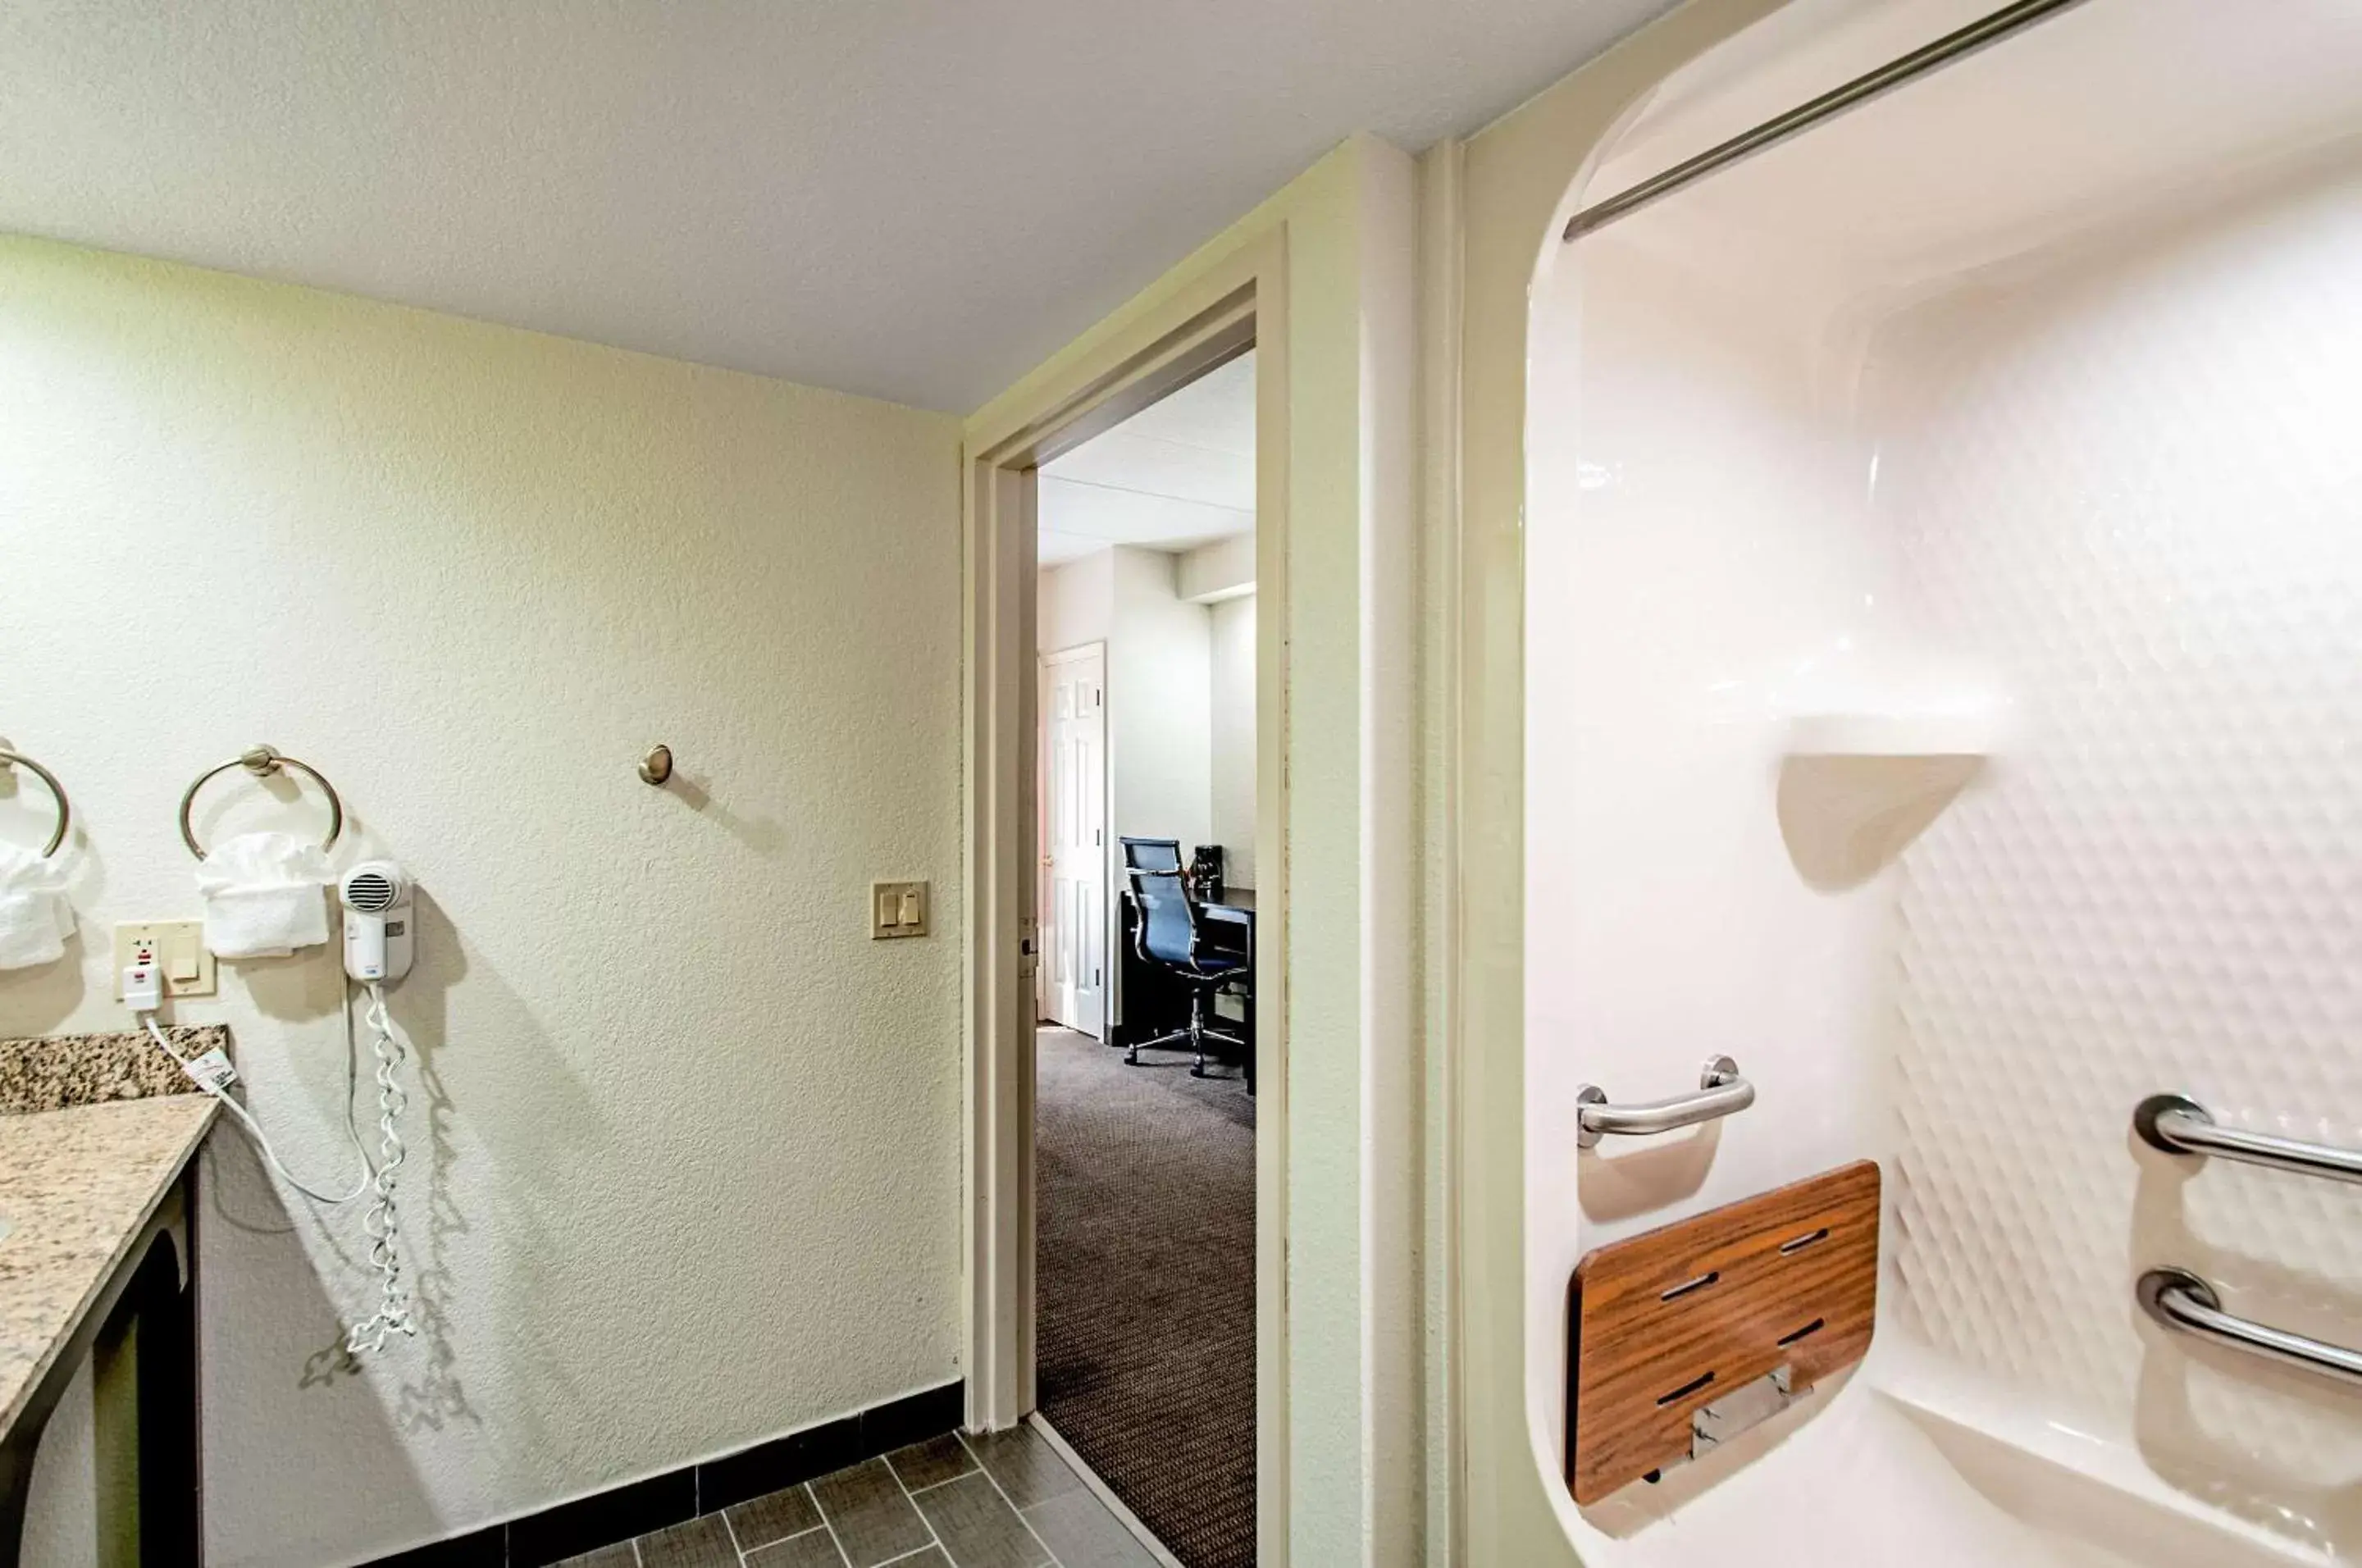 Photo of the whole room, Bathroom in Sleep Inn Frederick